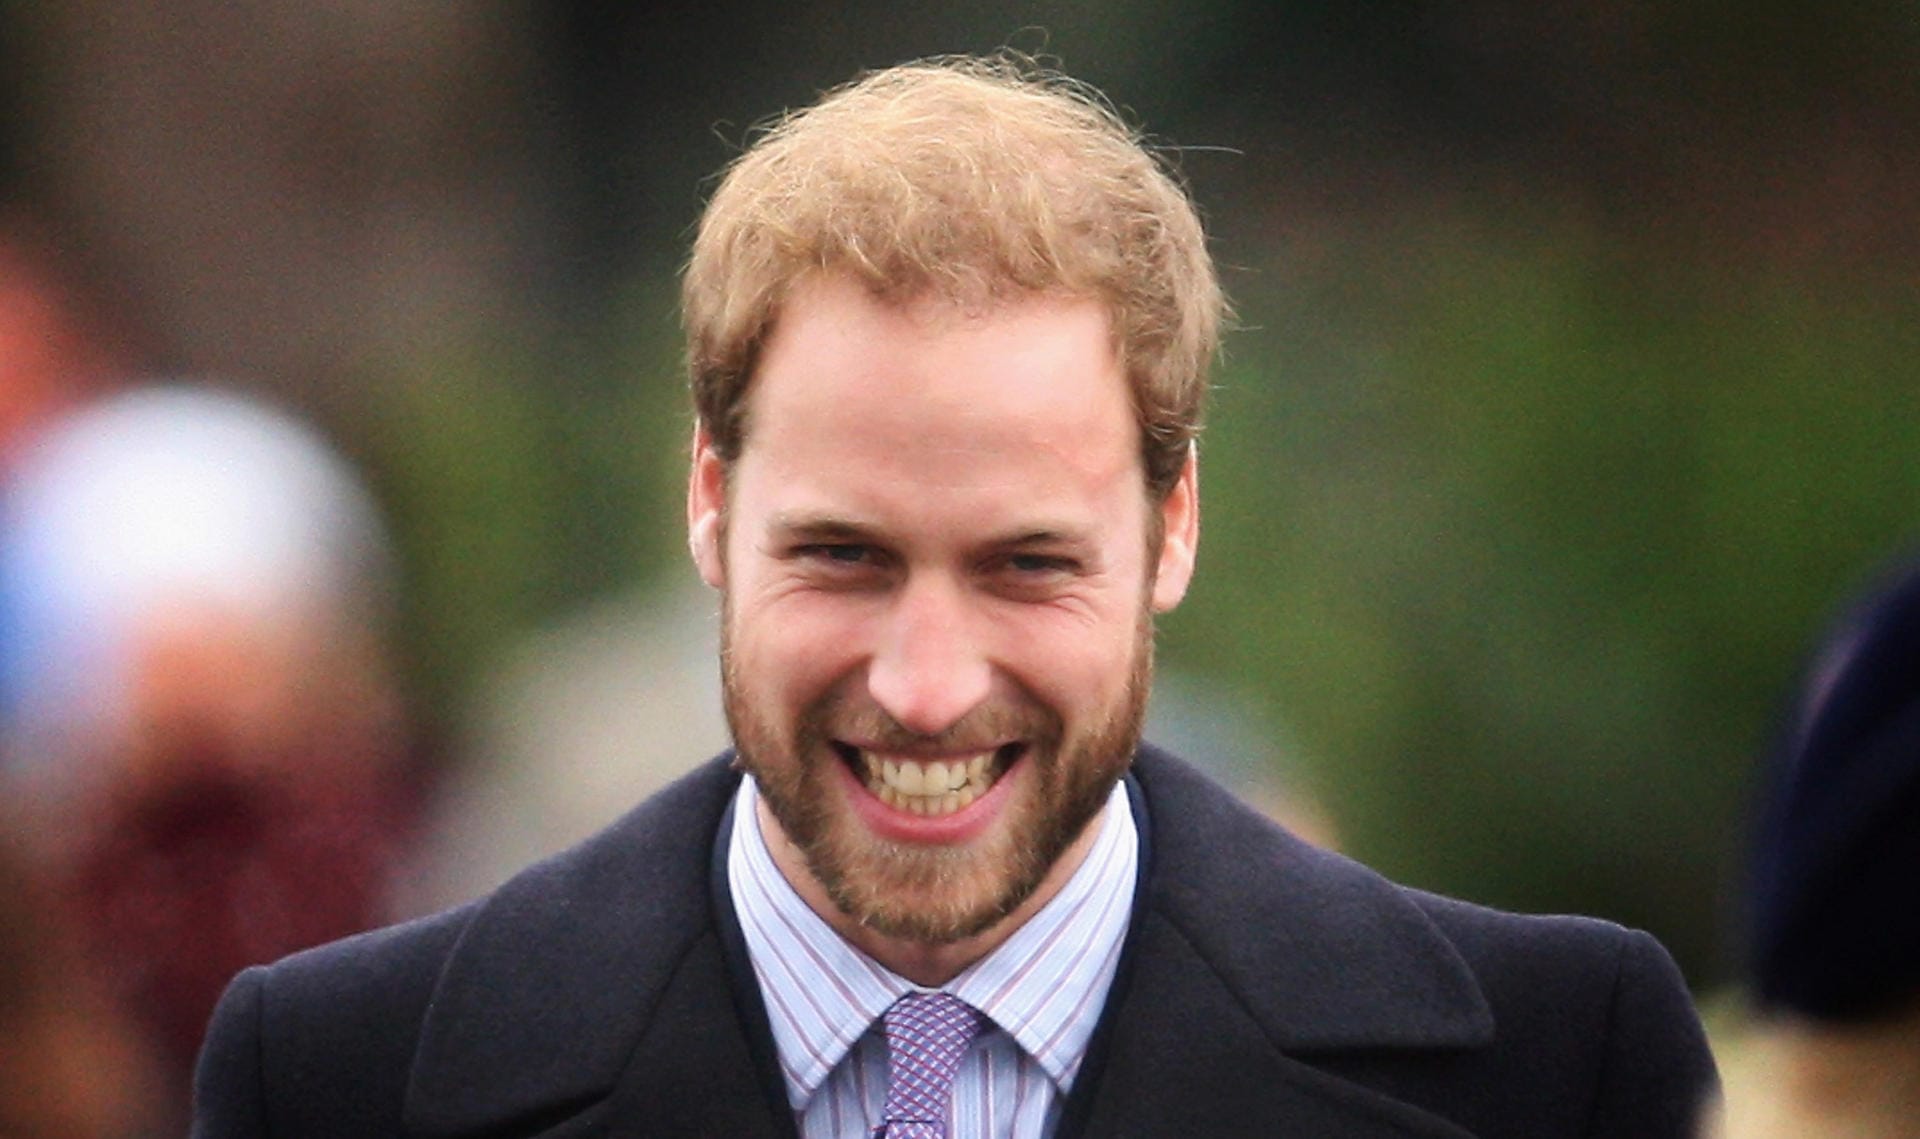 25. Dezember 2008: Beim Weihnachtsgottesdienst in Sandringham zeigte sich Prinz William zur Abwechslung mal mit Bart.